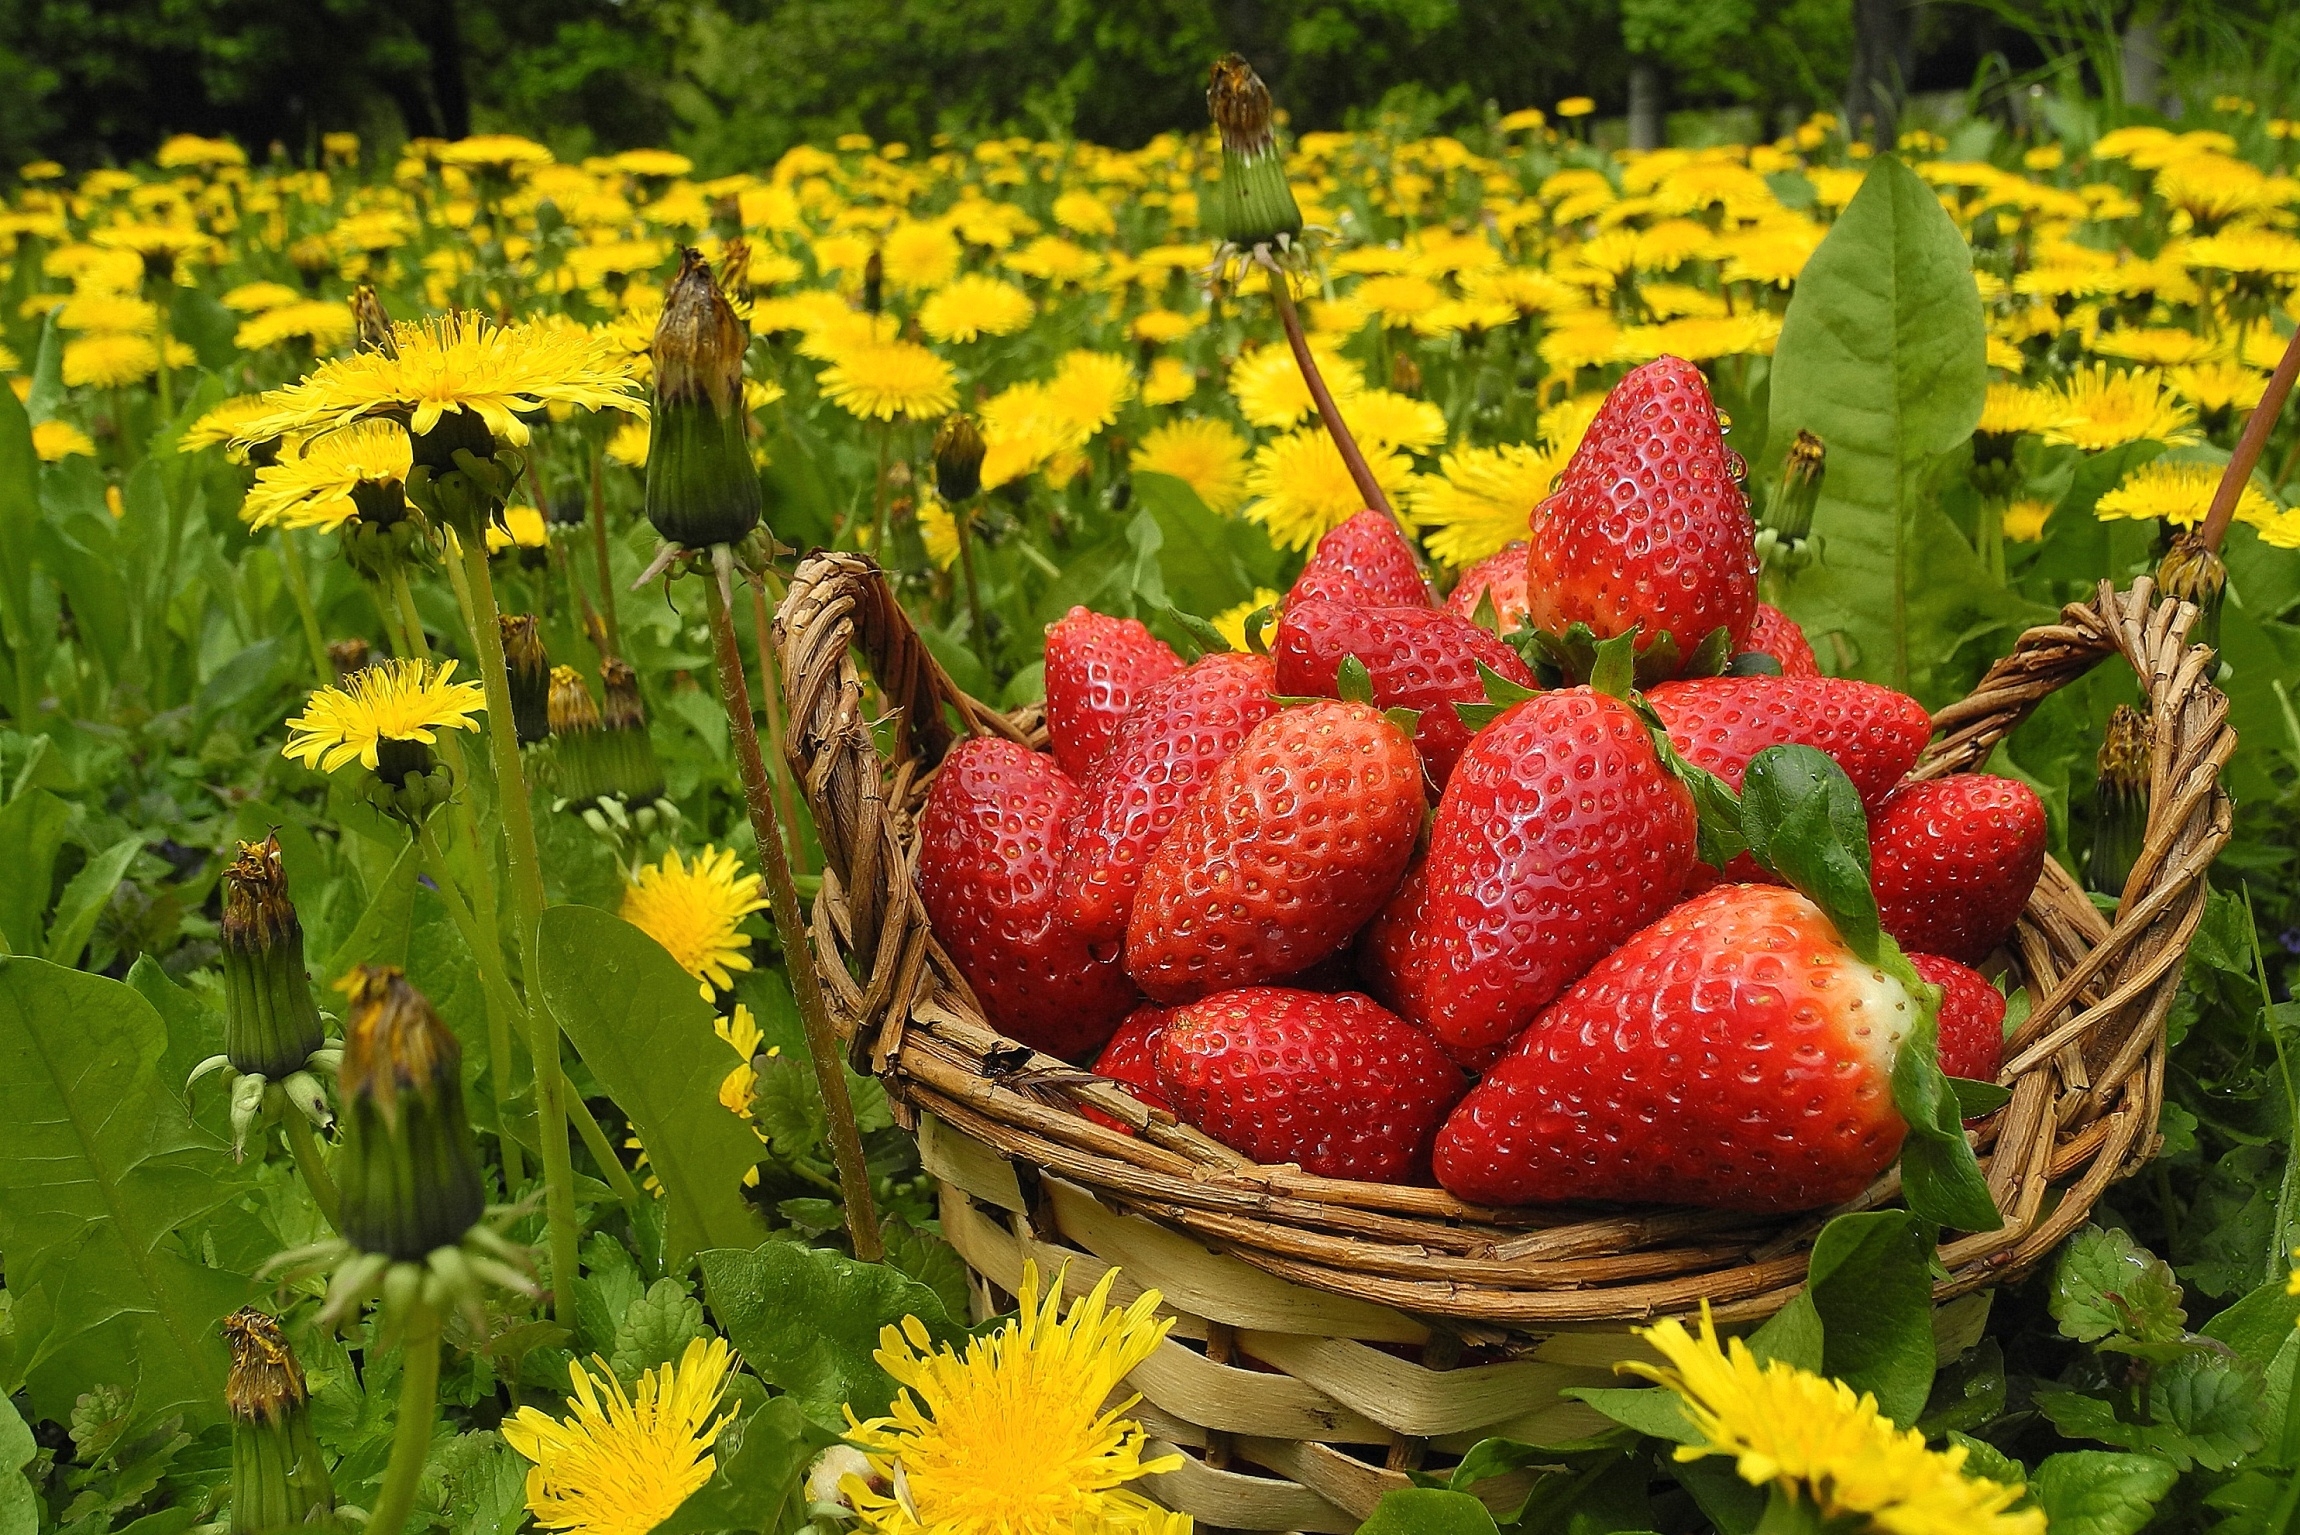 flowers, food, strawberry, dandelions, berries, basket, meadow Free Background